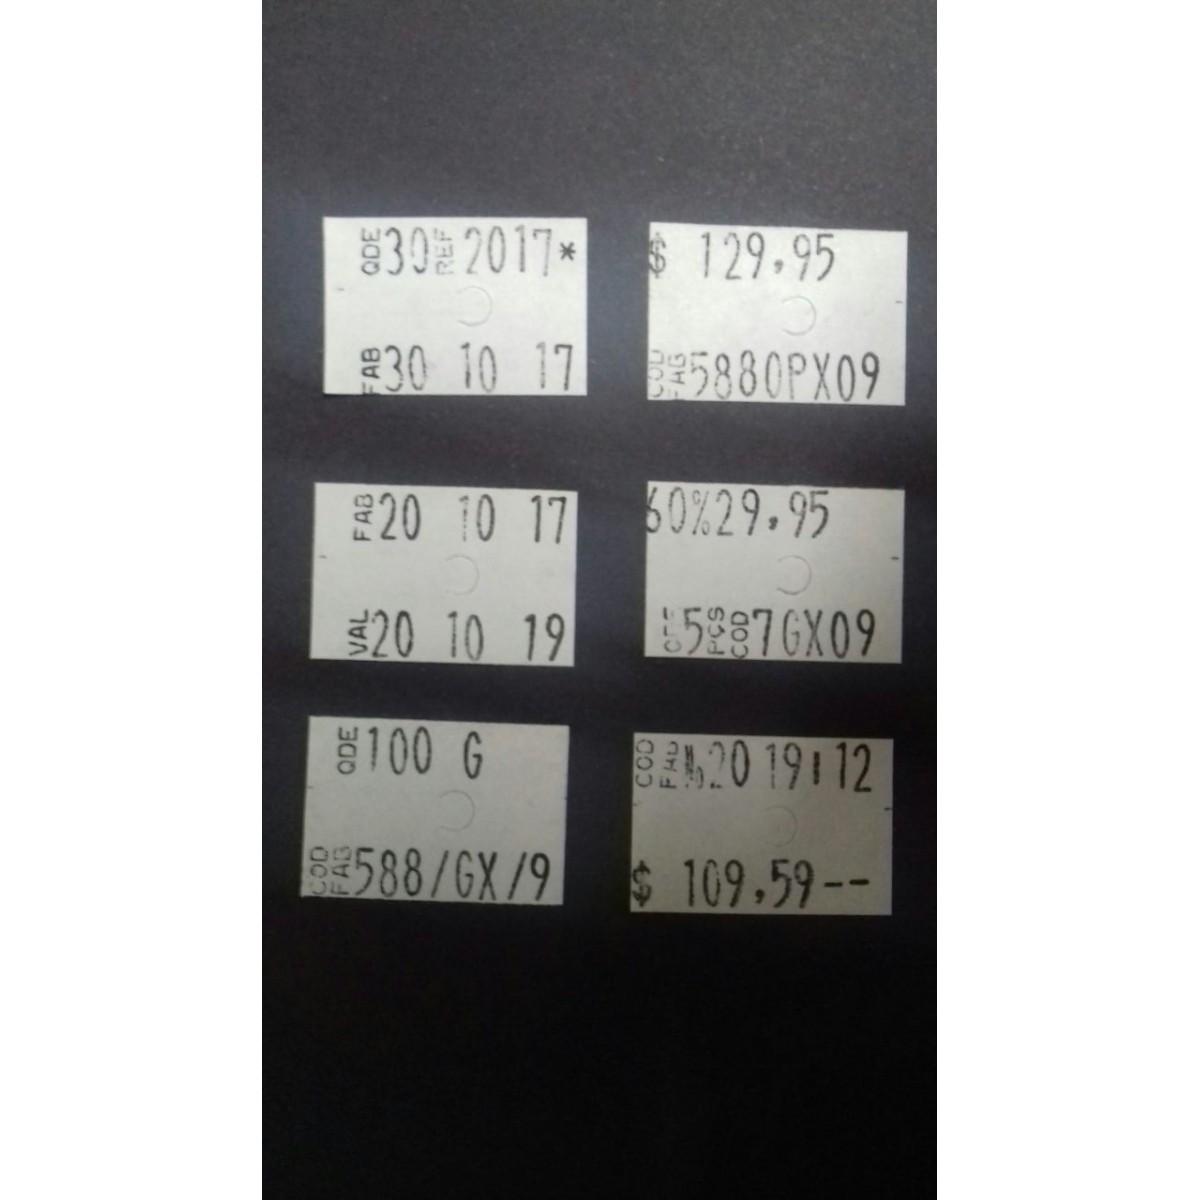 Etiquetadora MX 6600 - 2 Linhas 10 Digitos por linha